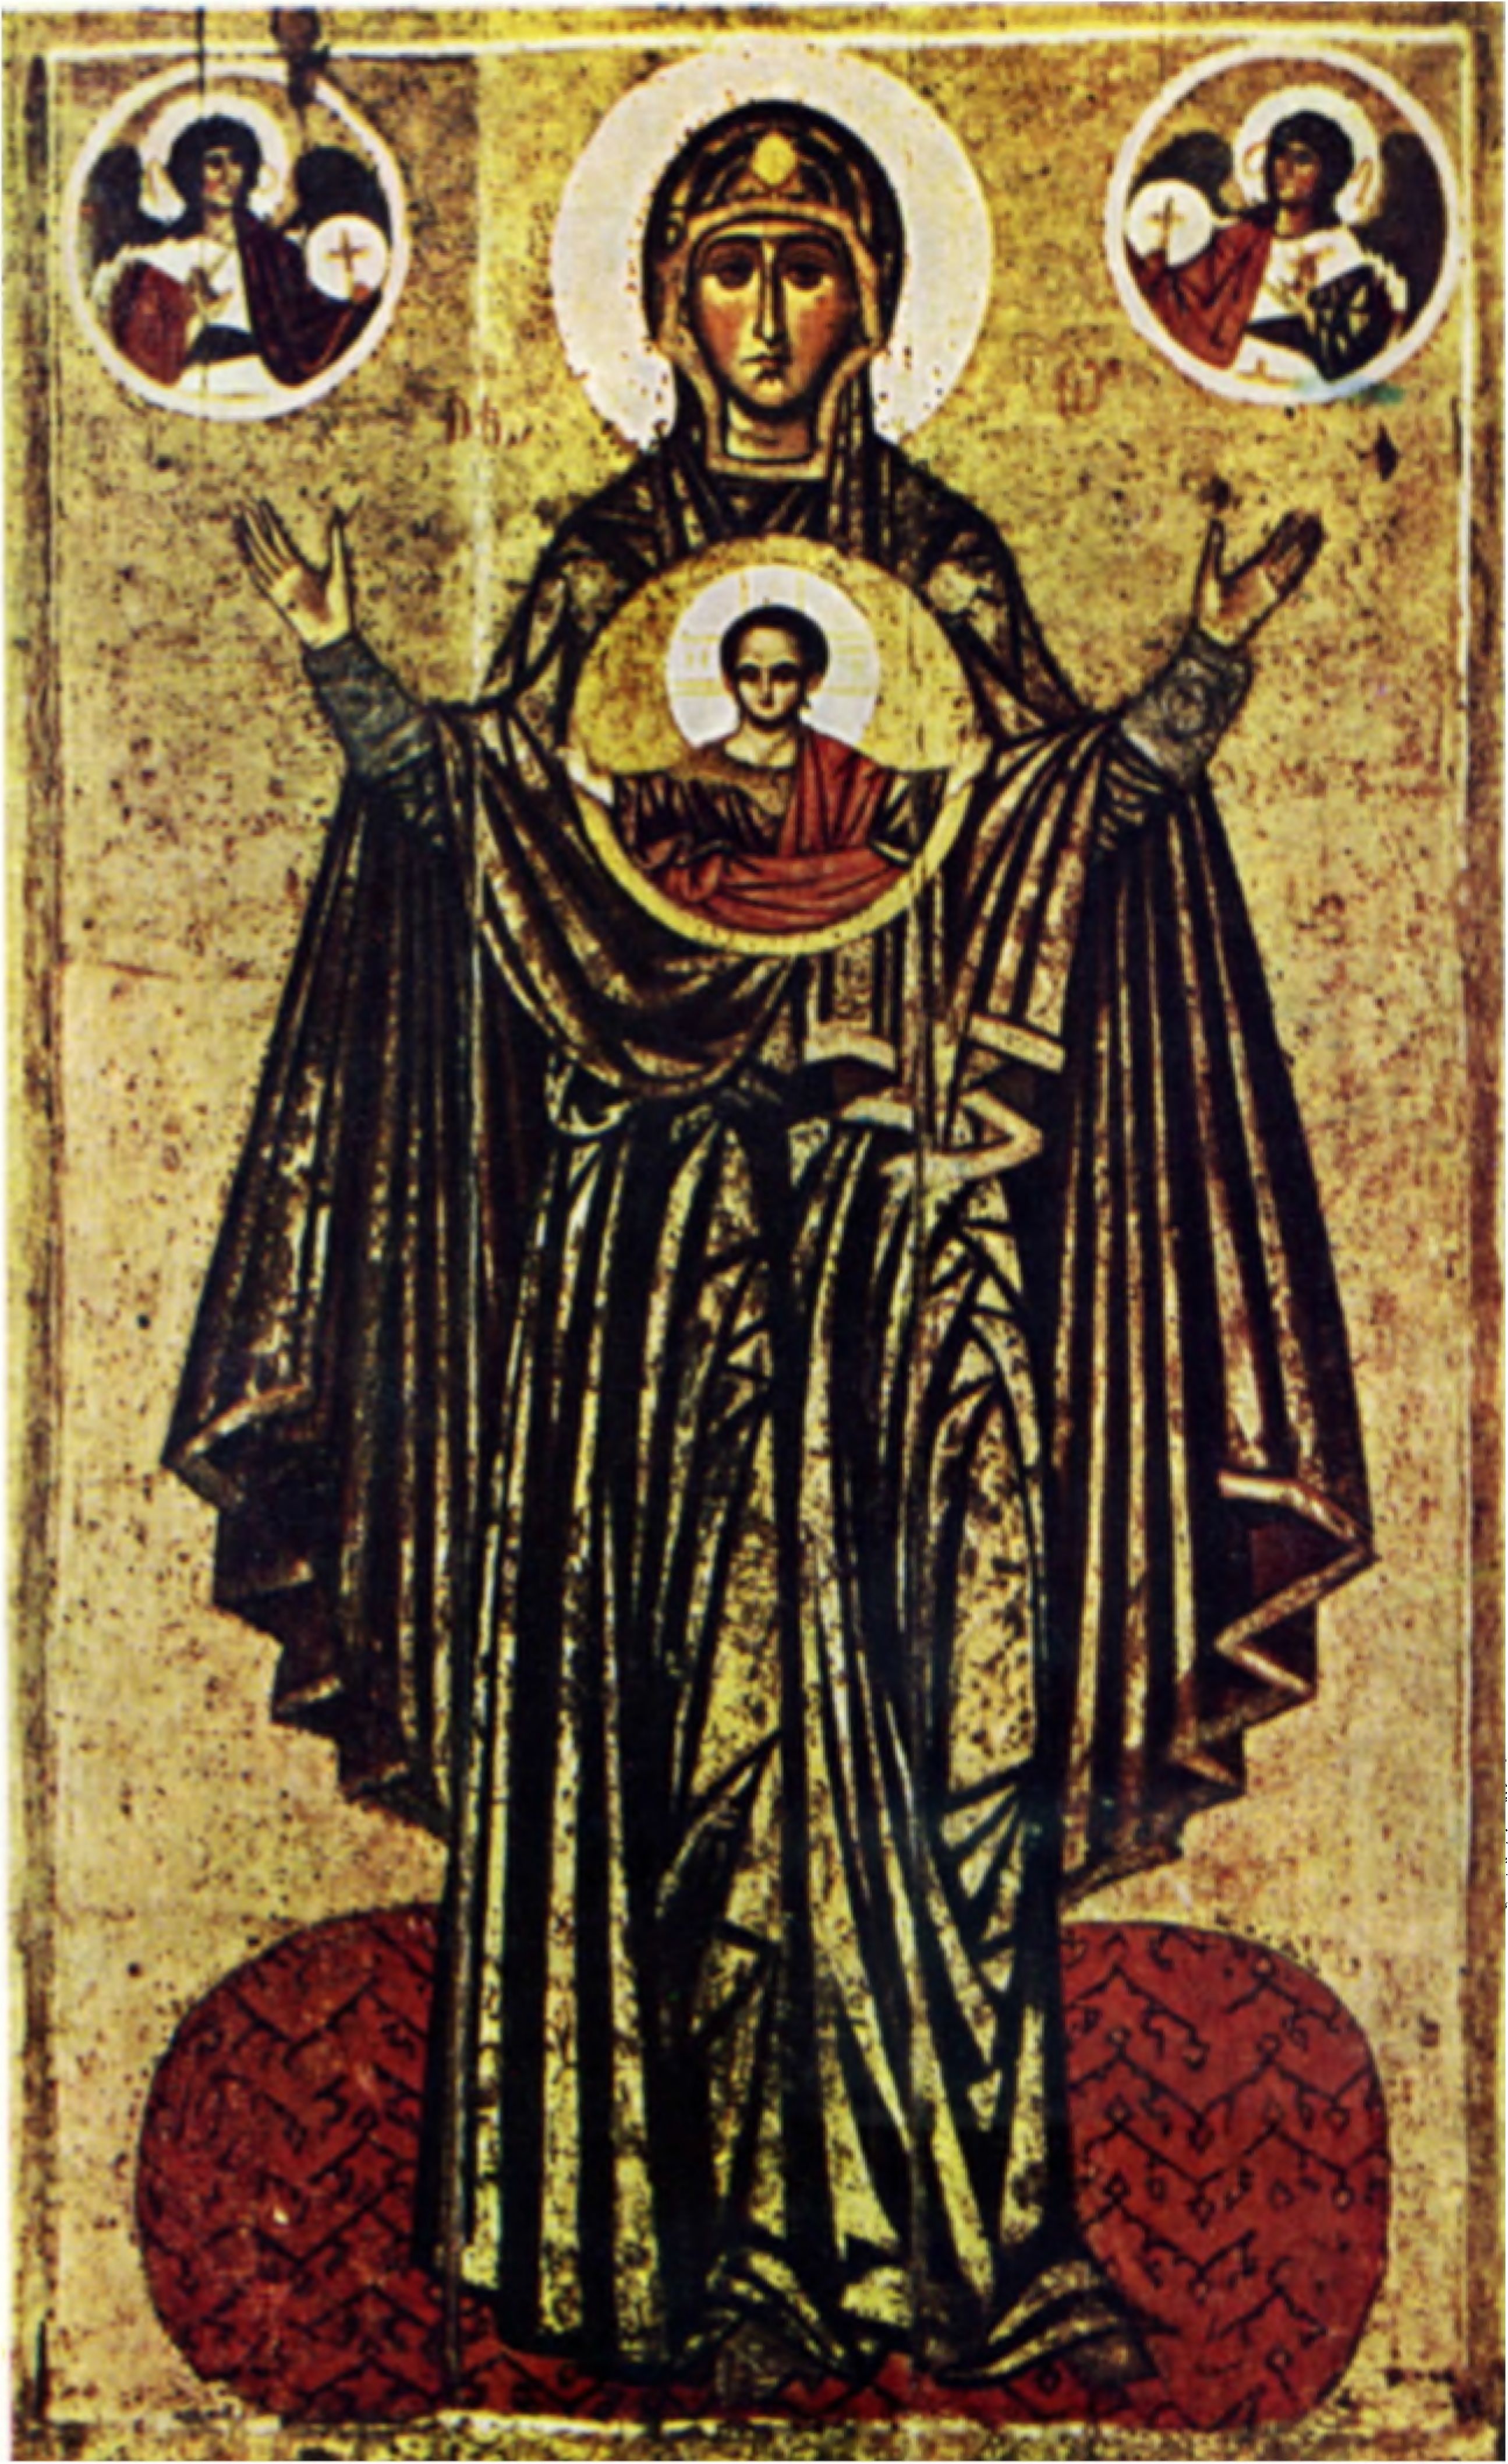 Икона «Знамение» XII—XIII вв. Предположительно киевского происхождения